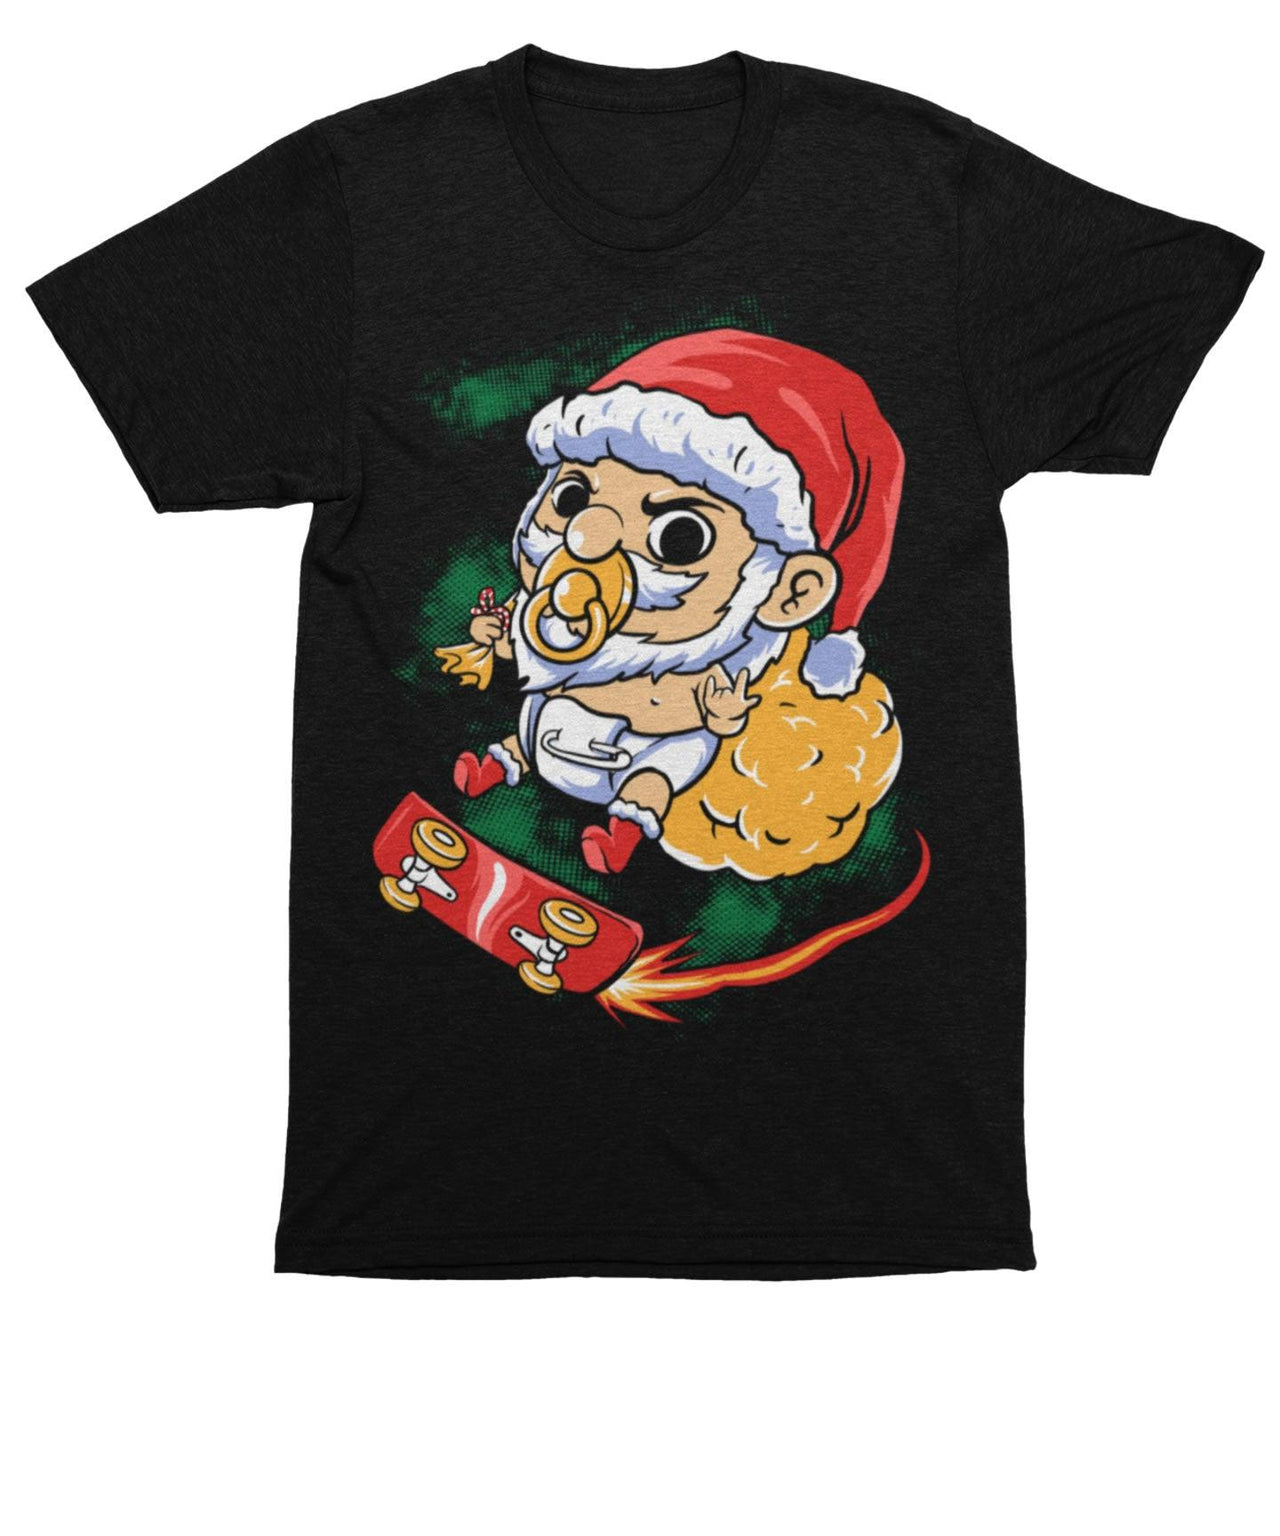 Skateboarding Baby Santa Unisex Christmas T-Shirt For Men 8Ball